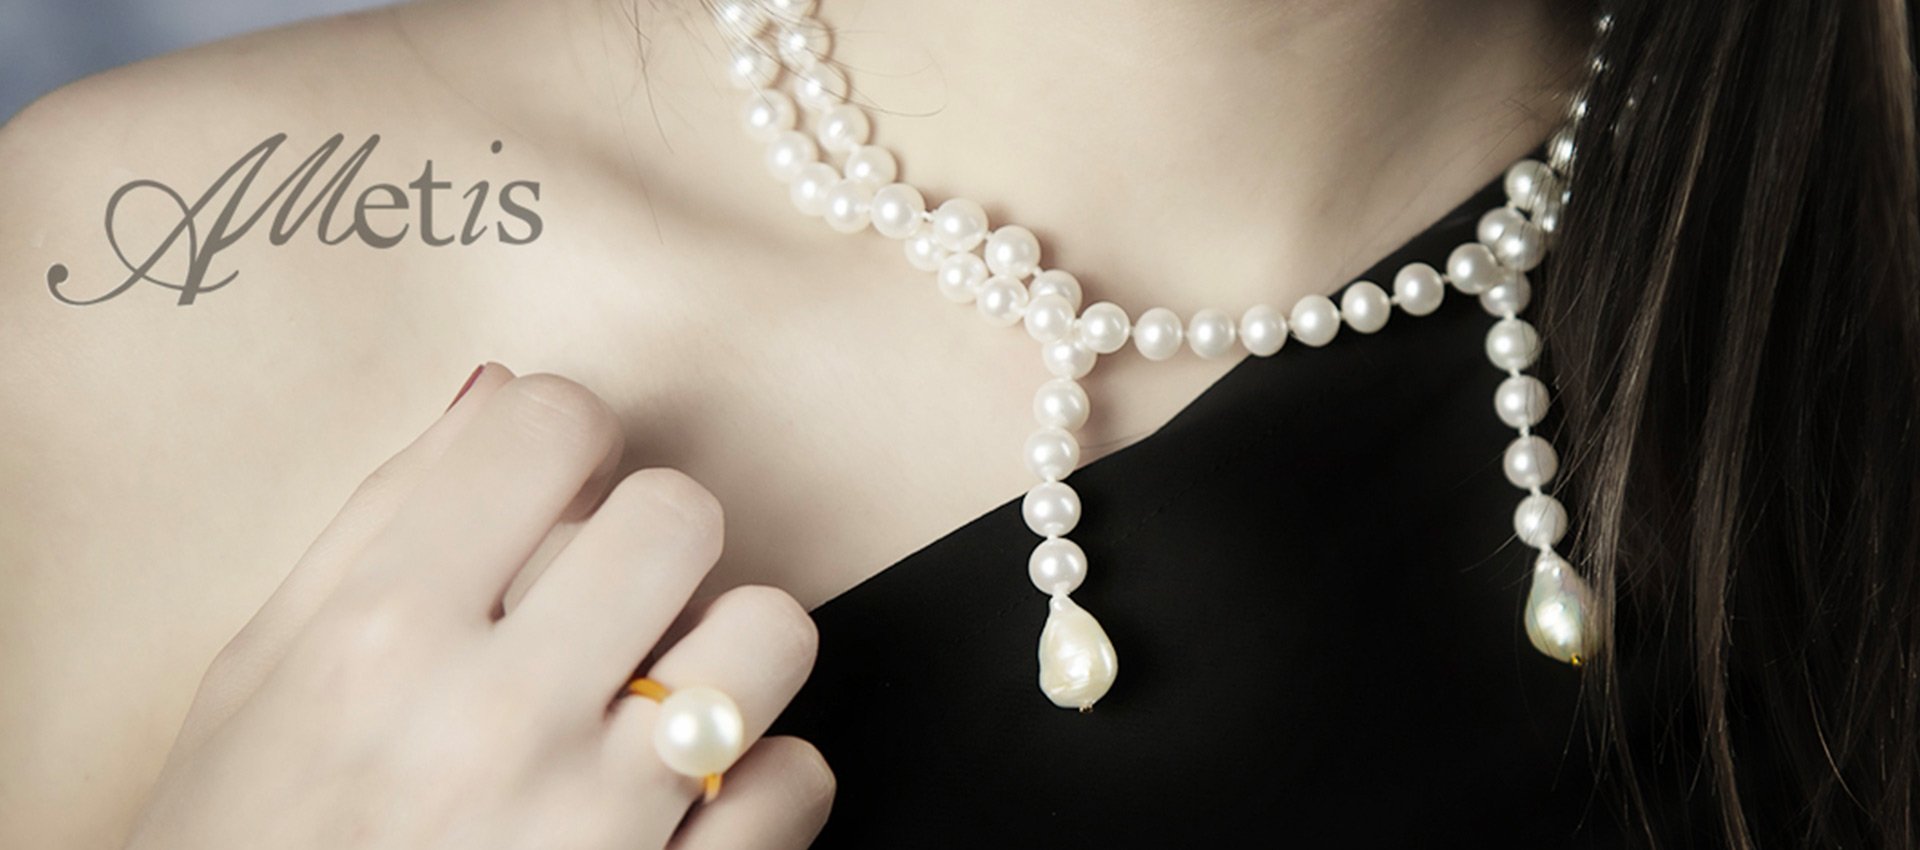 Le perle.. fascino senza tempo!